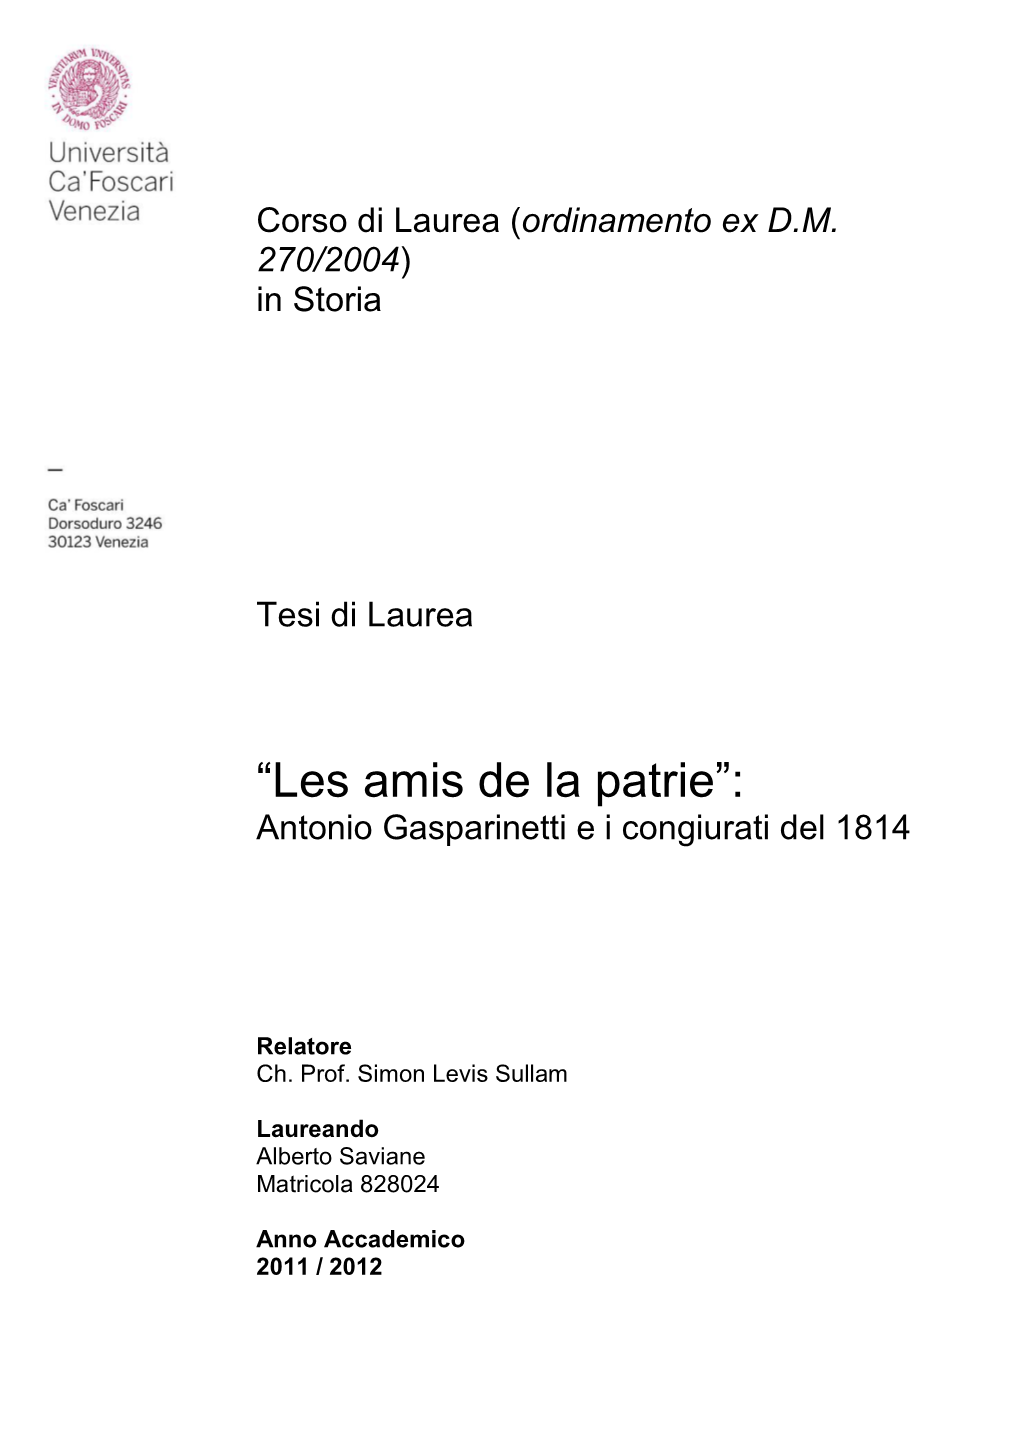 “Les Amis De La Patrie”: Antonio Gasparinetti E I Congiurati Del 1814